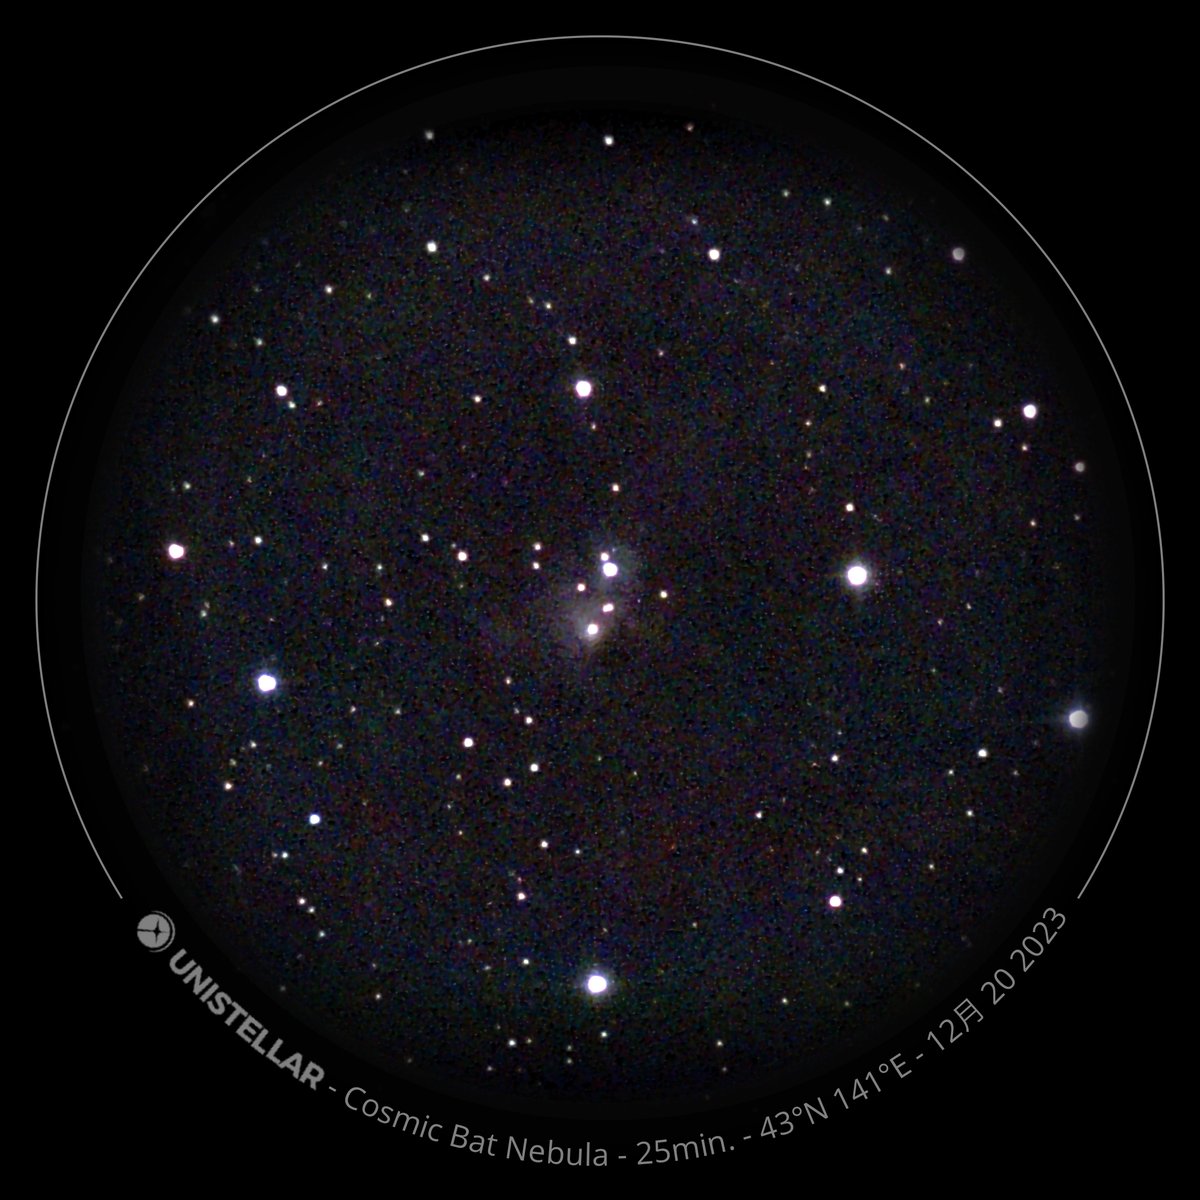 年末年始に、オリオン座の西のはずれにある、NGC 1788 星雲を観測した。ここで生まれた100万歳くらいの若い星が、まわりのガスを照らして、光っている反射星雲。画像20枚をスタックして、Lynkeos で処理した。
#eVscope